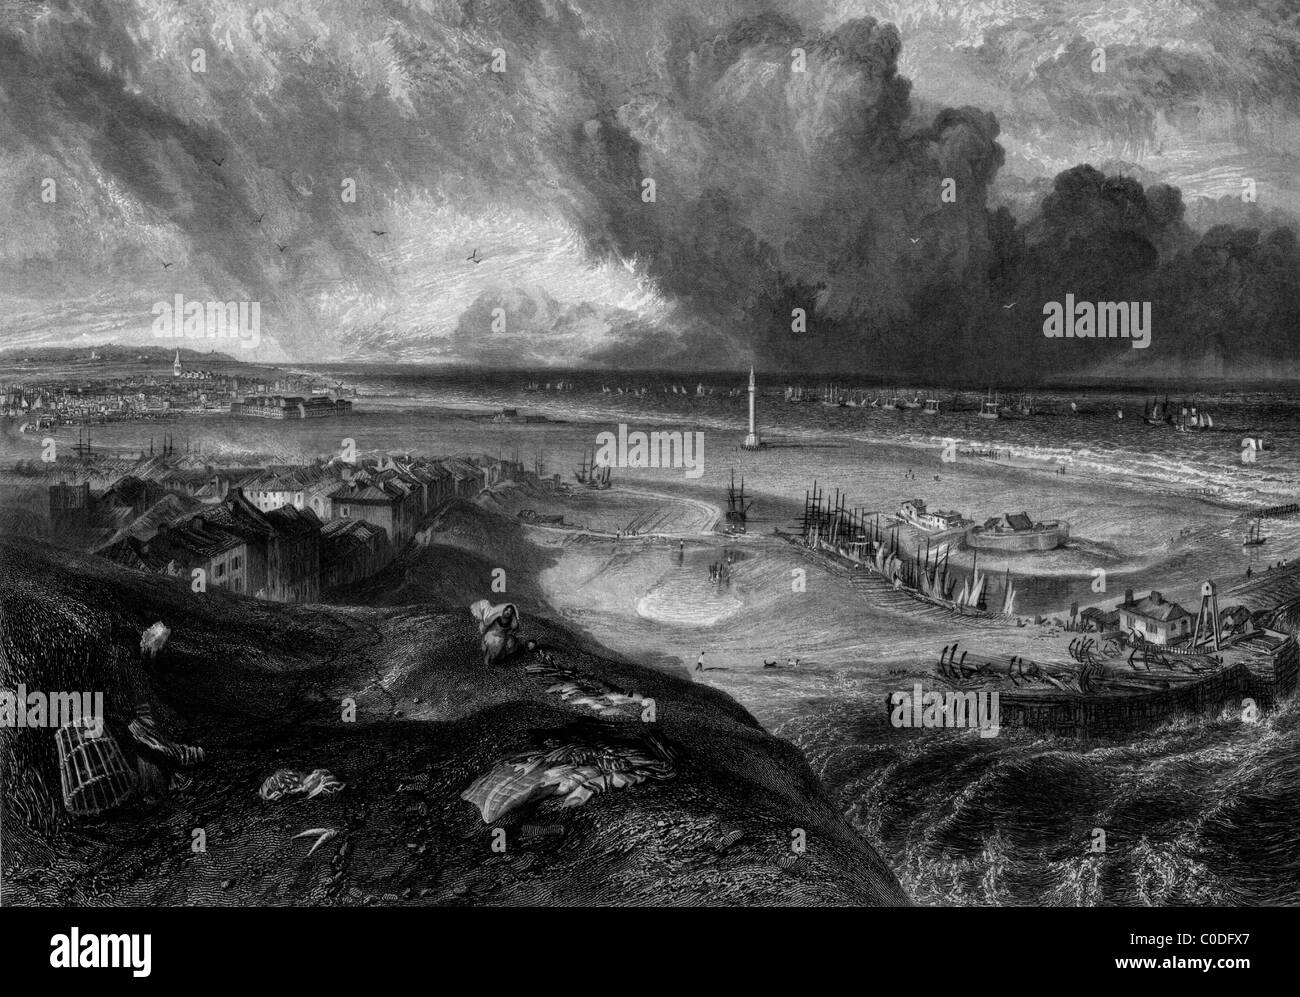 Great Yarmouth Strand und Hafen, Norfolk, England. Gestochen von William Miller im Jahre 1838, Public Domain Bild aufgrund Alter. Stockfoto